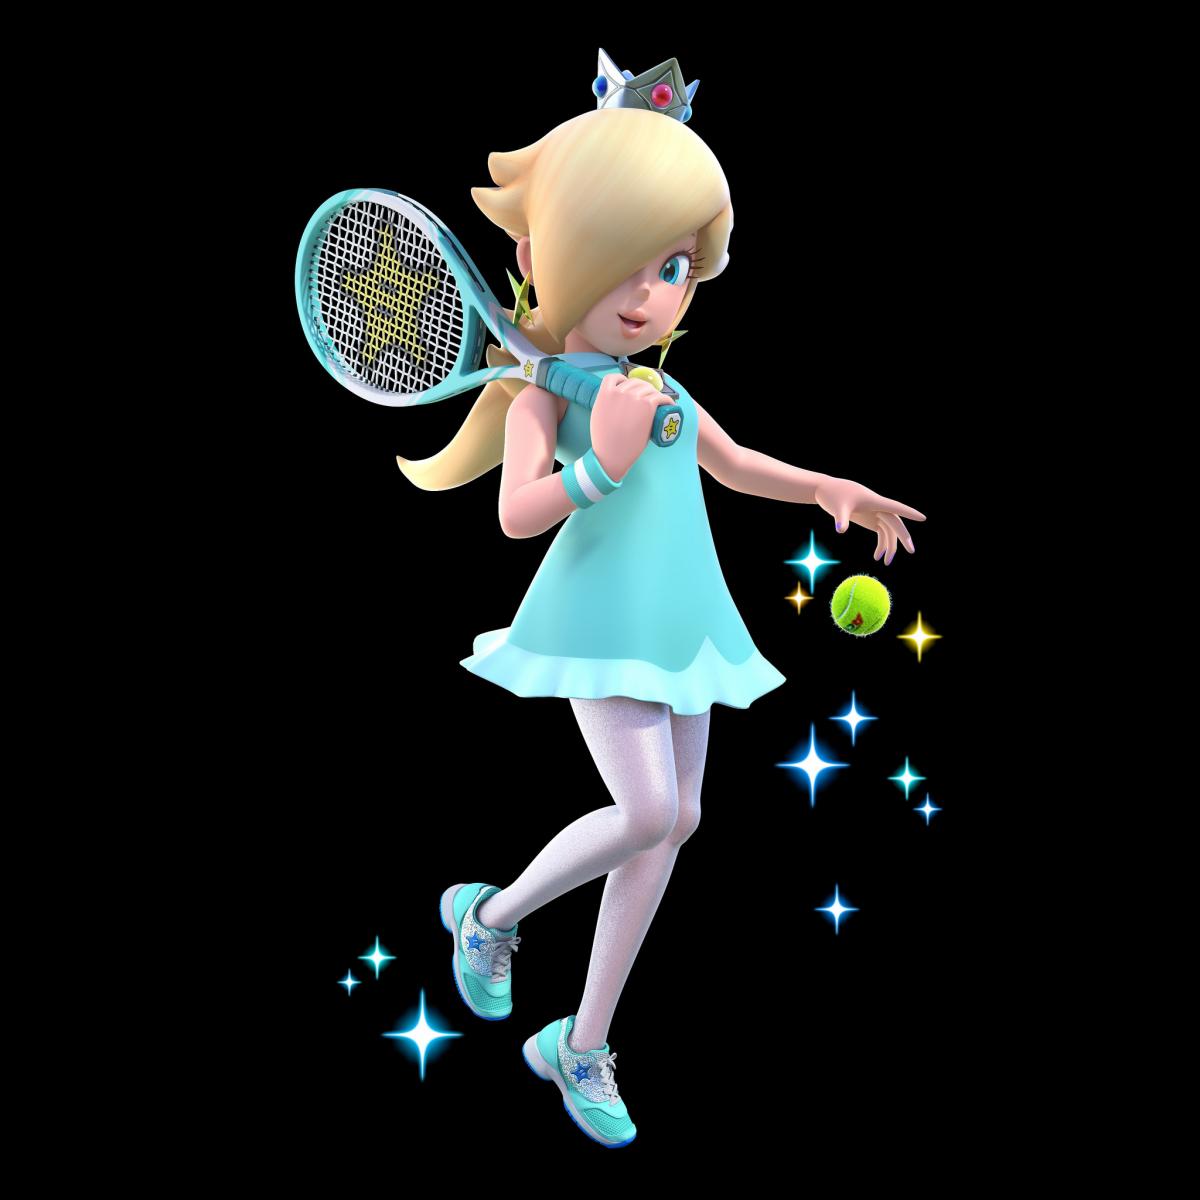 Image Mario Tennis Aces 15